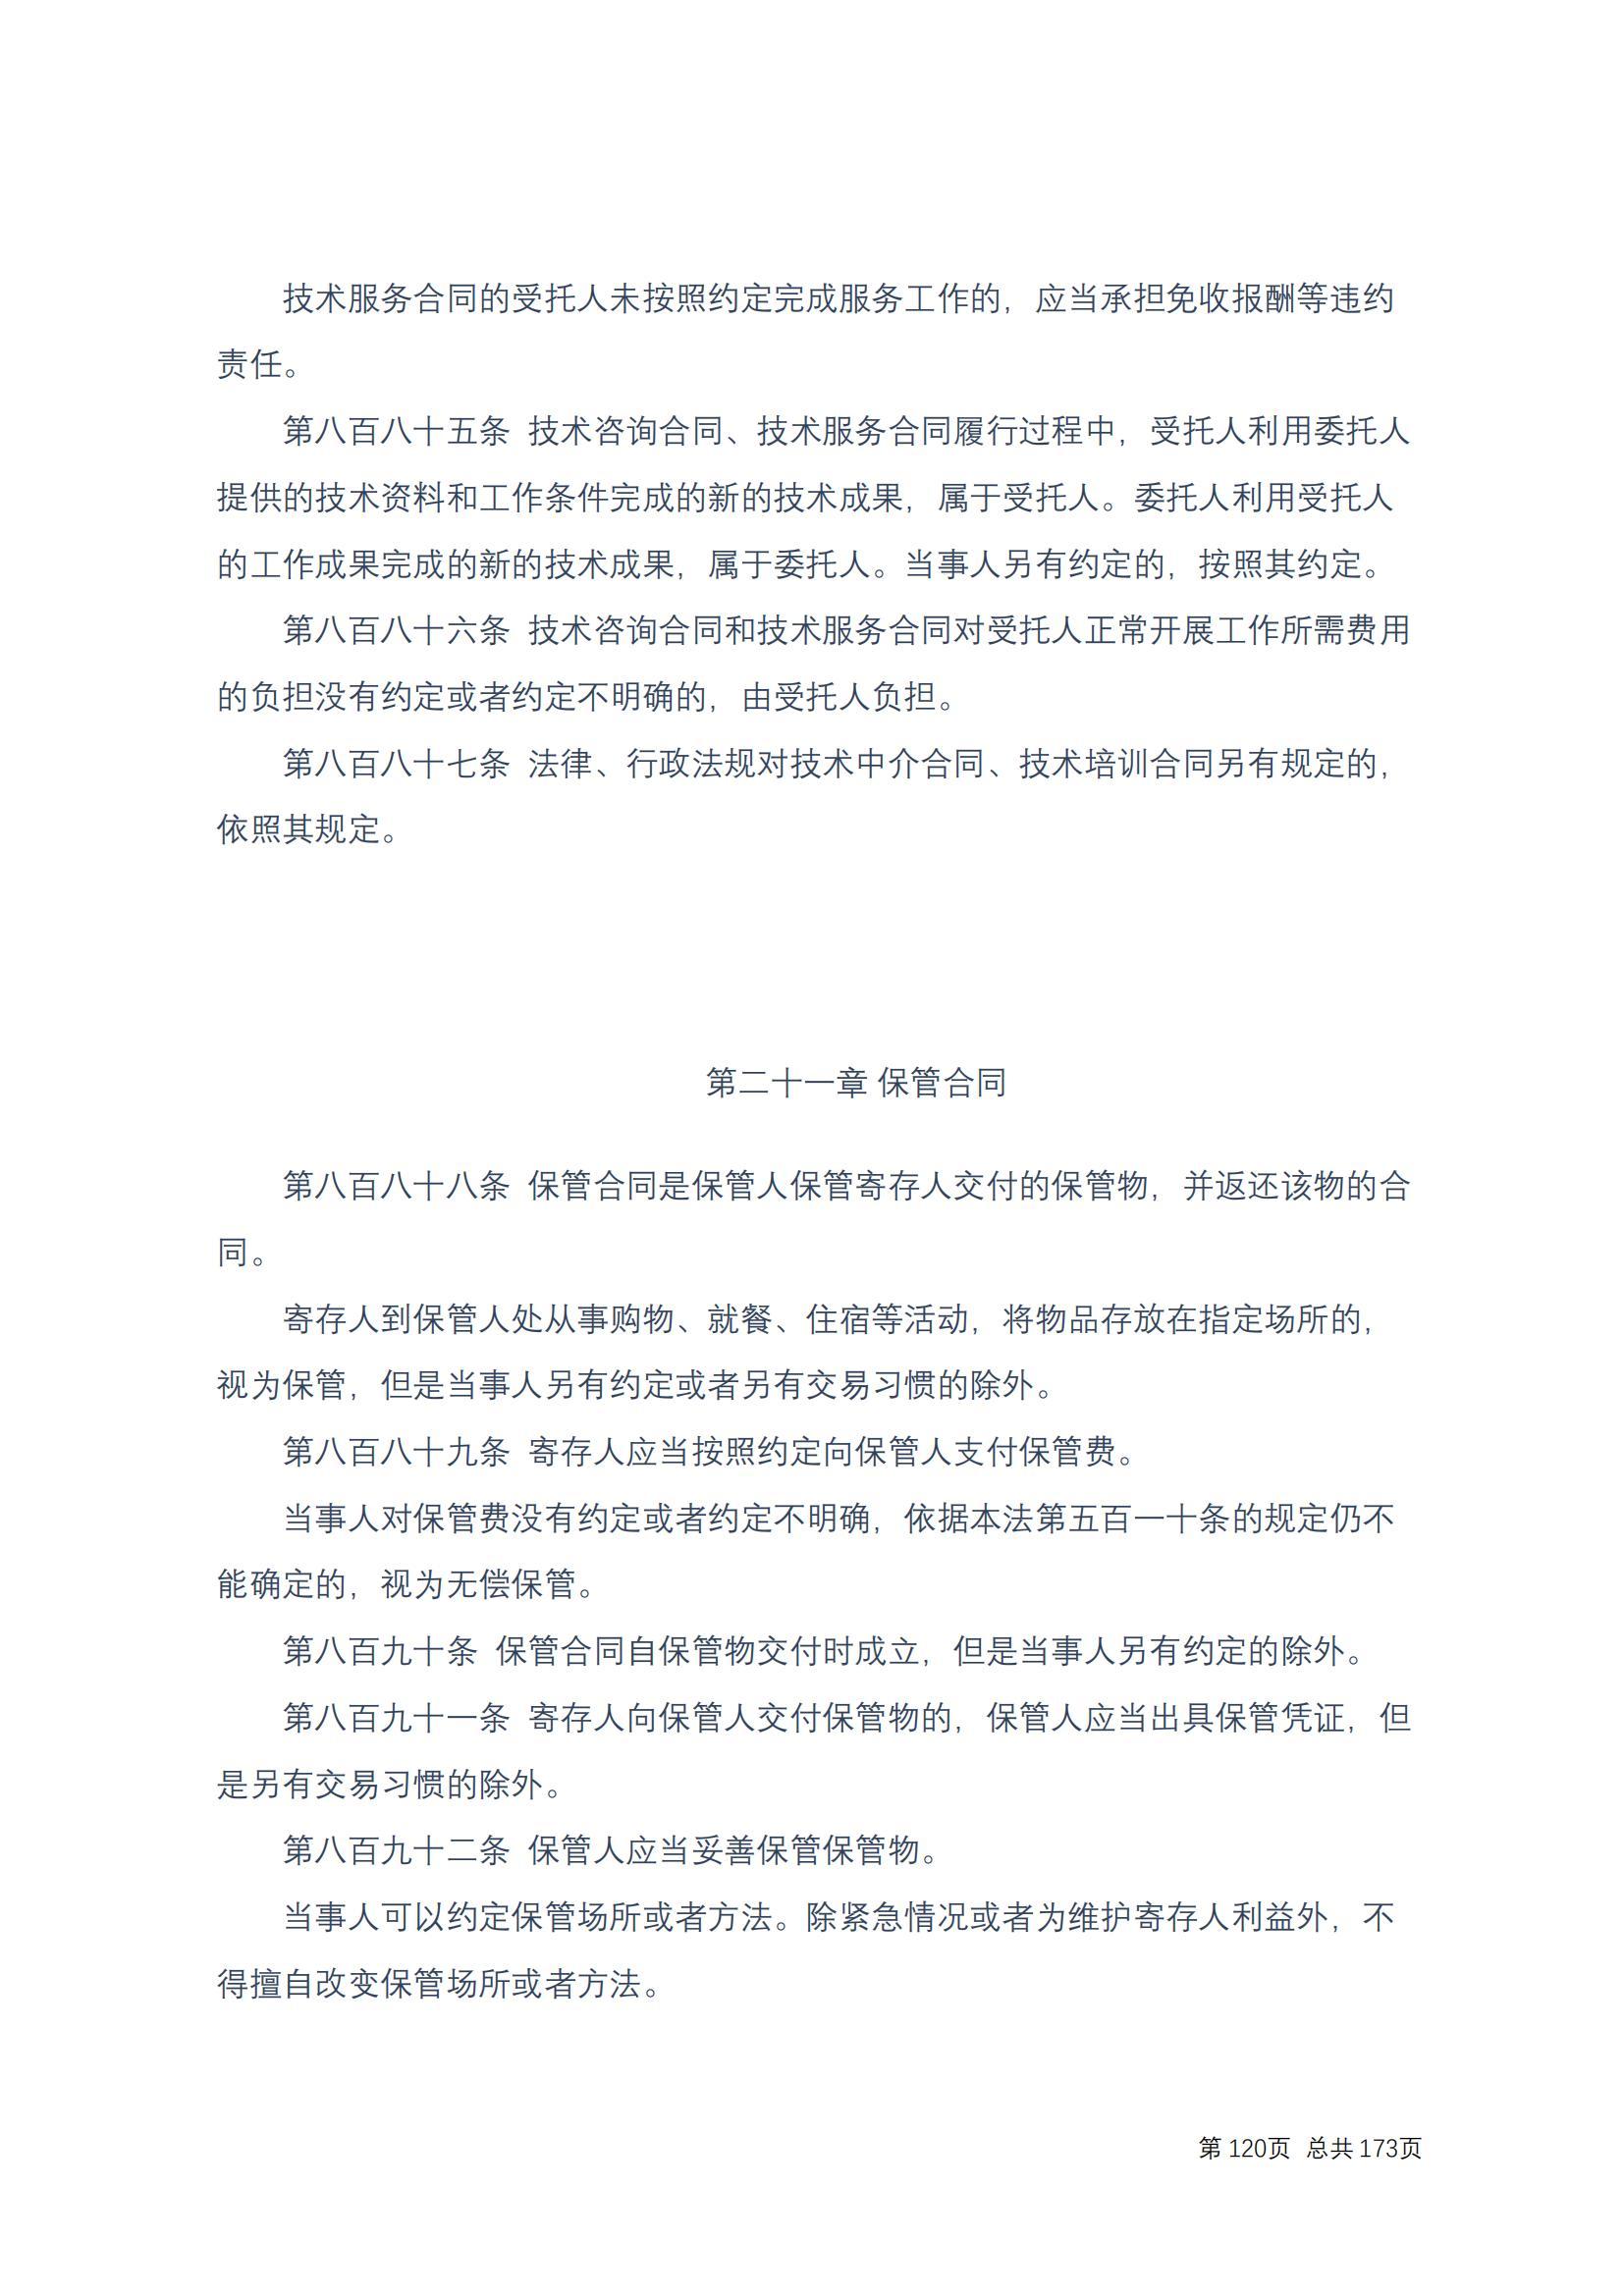 中华人民共和国民法典 修改过_119